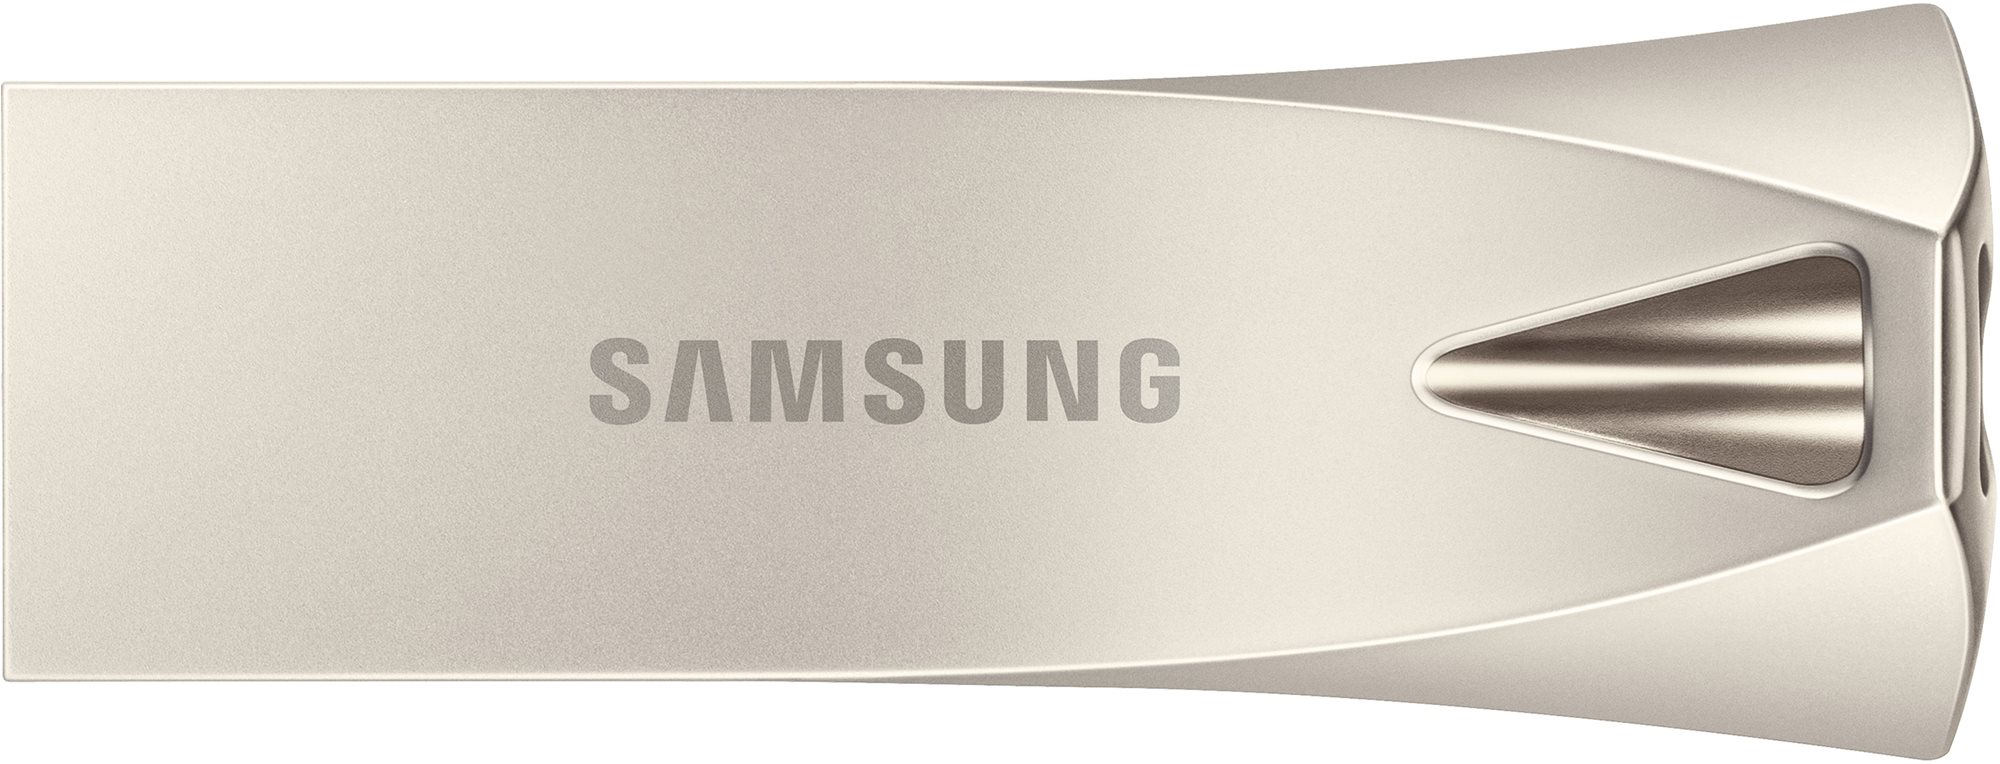 Samsung USB 3.1 32GB Bar Plus Champagne Silver